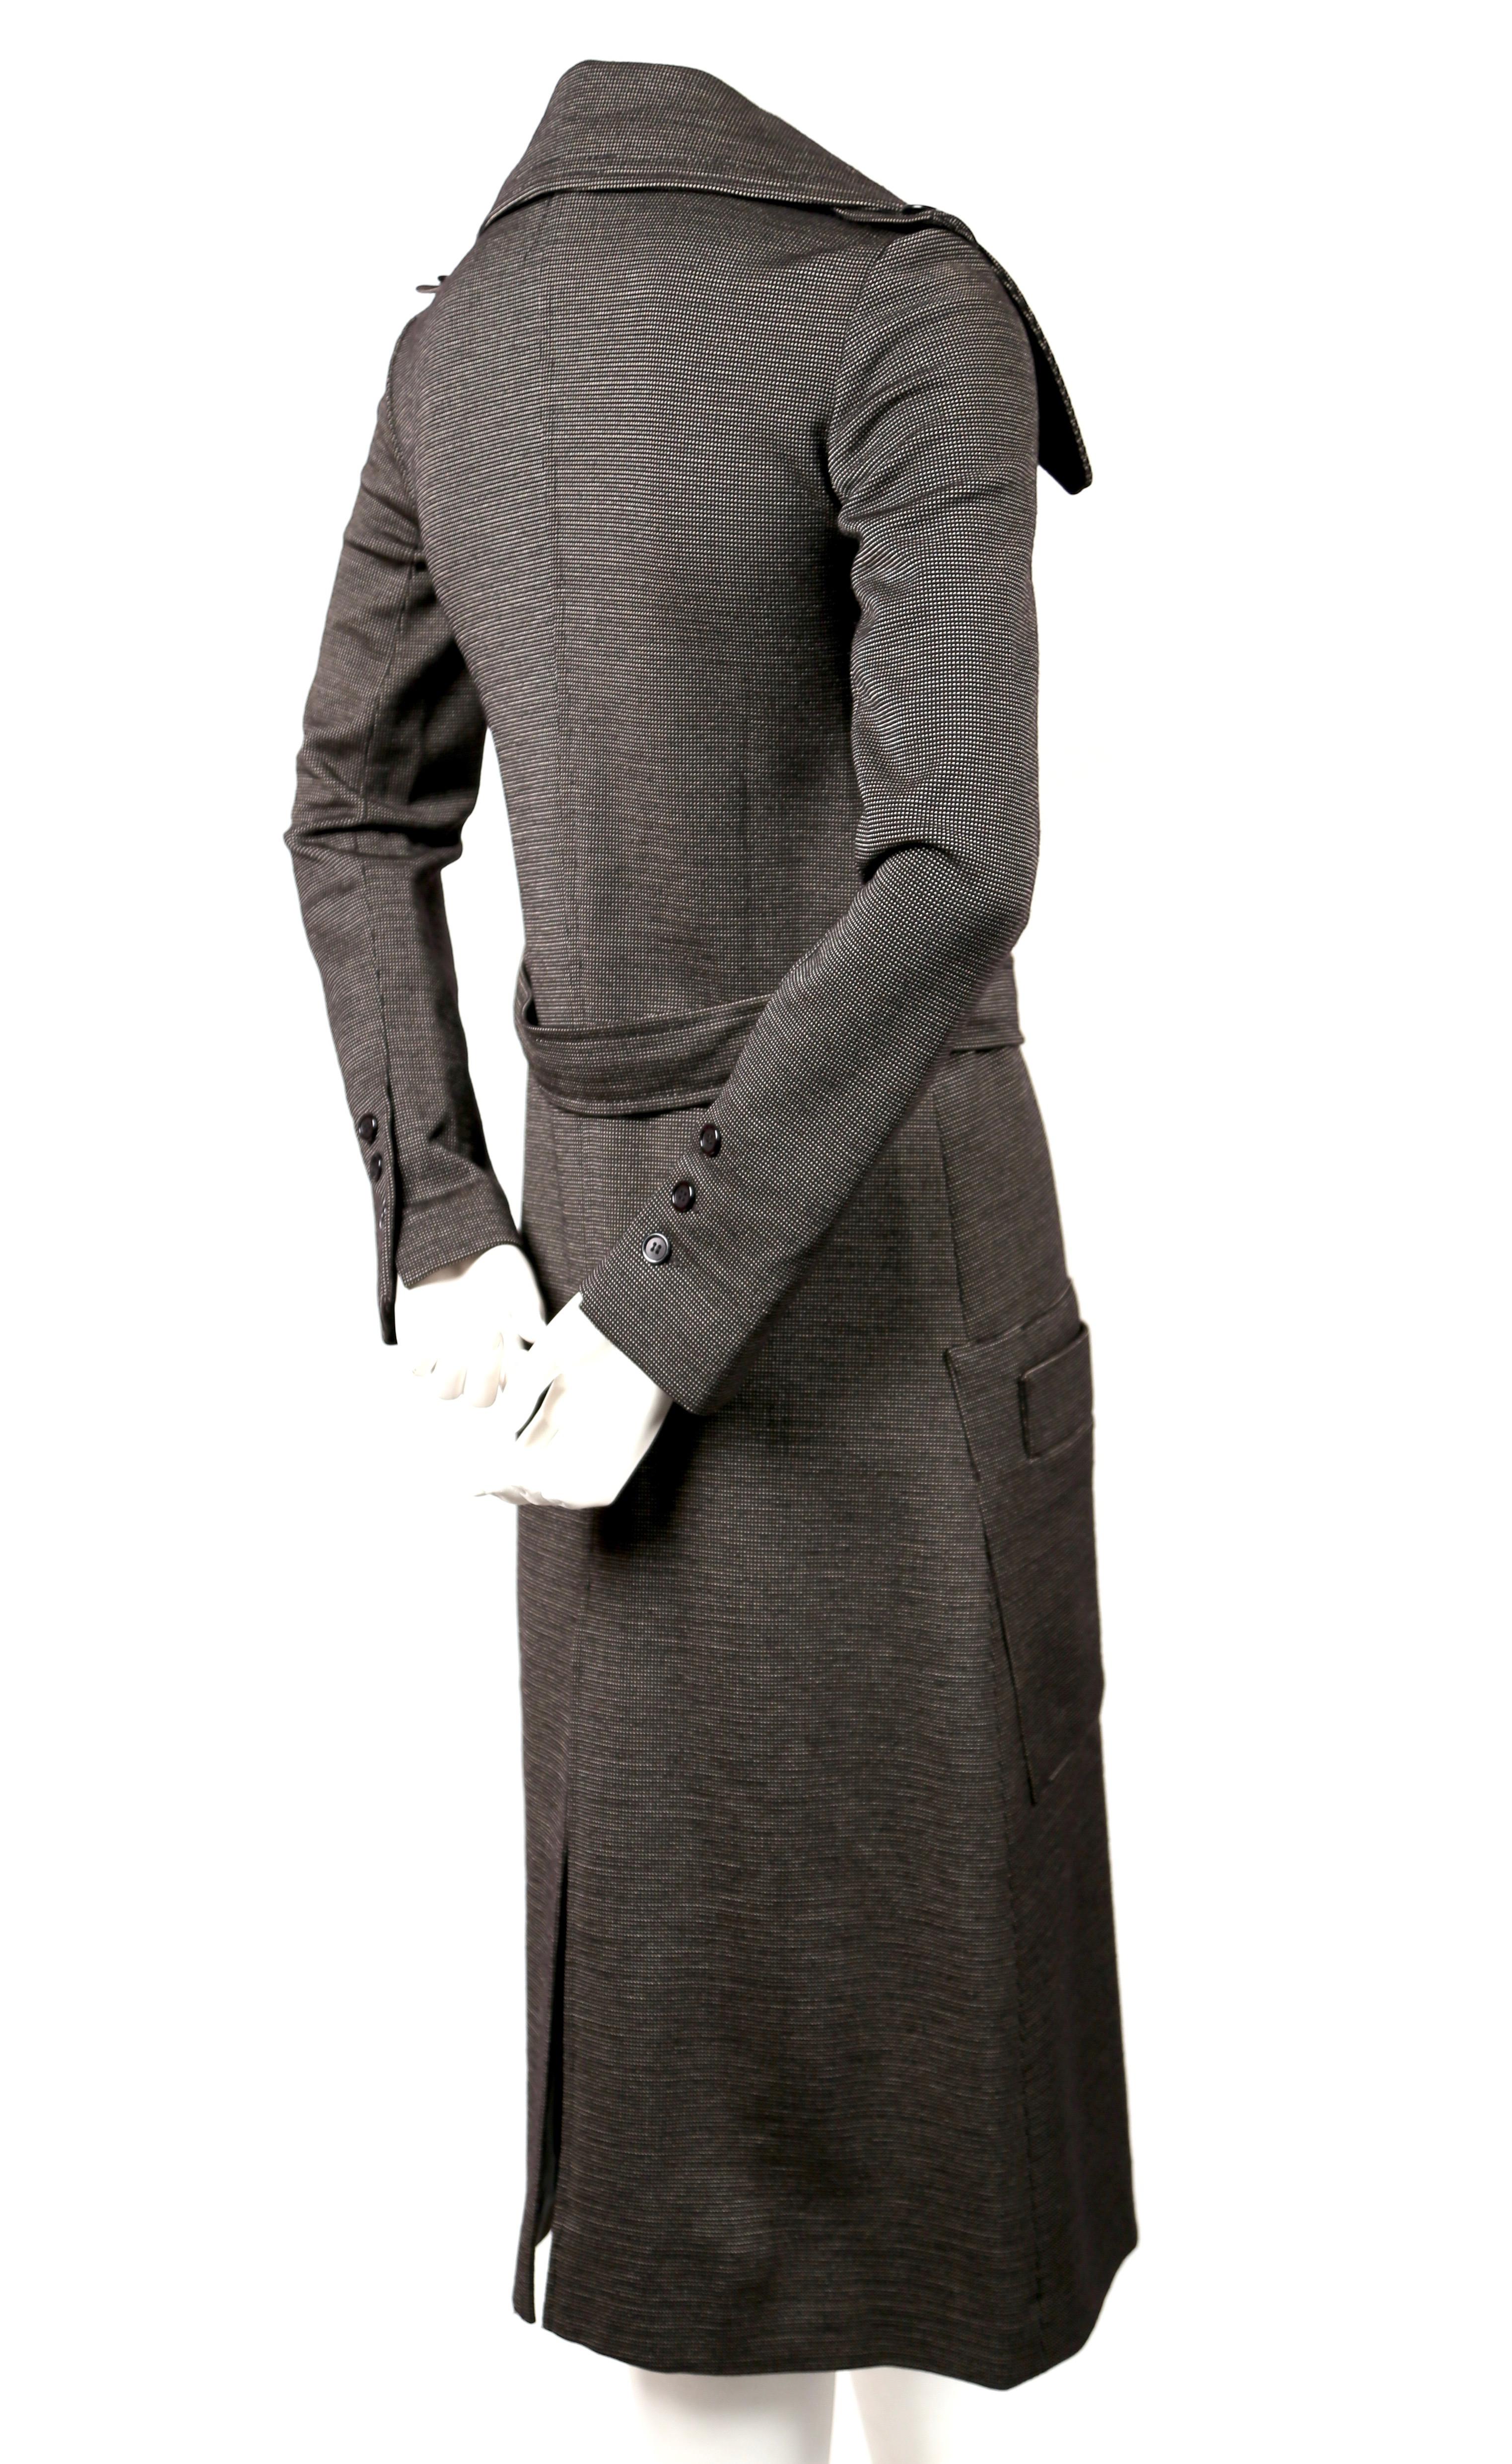 Très rare trench ajusté en jersey de laine de Sonia Rykiel datant des années 1970. Le trench convient au mieux à un 2 US à un 4 très étroit en raison des bras très longs et étroits. Mesures approximatives : épaule 14